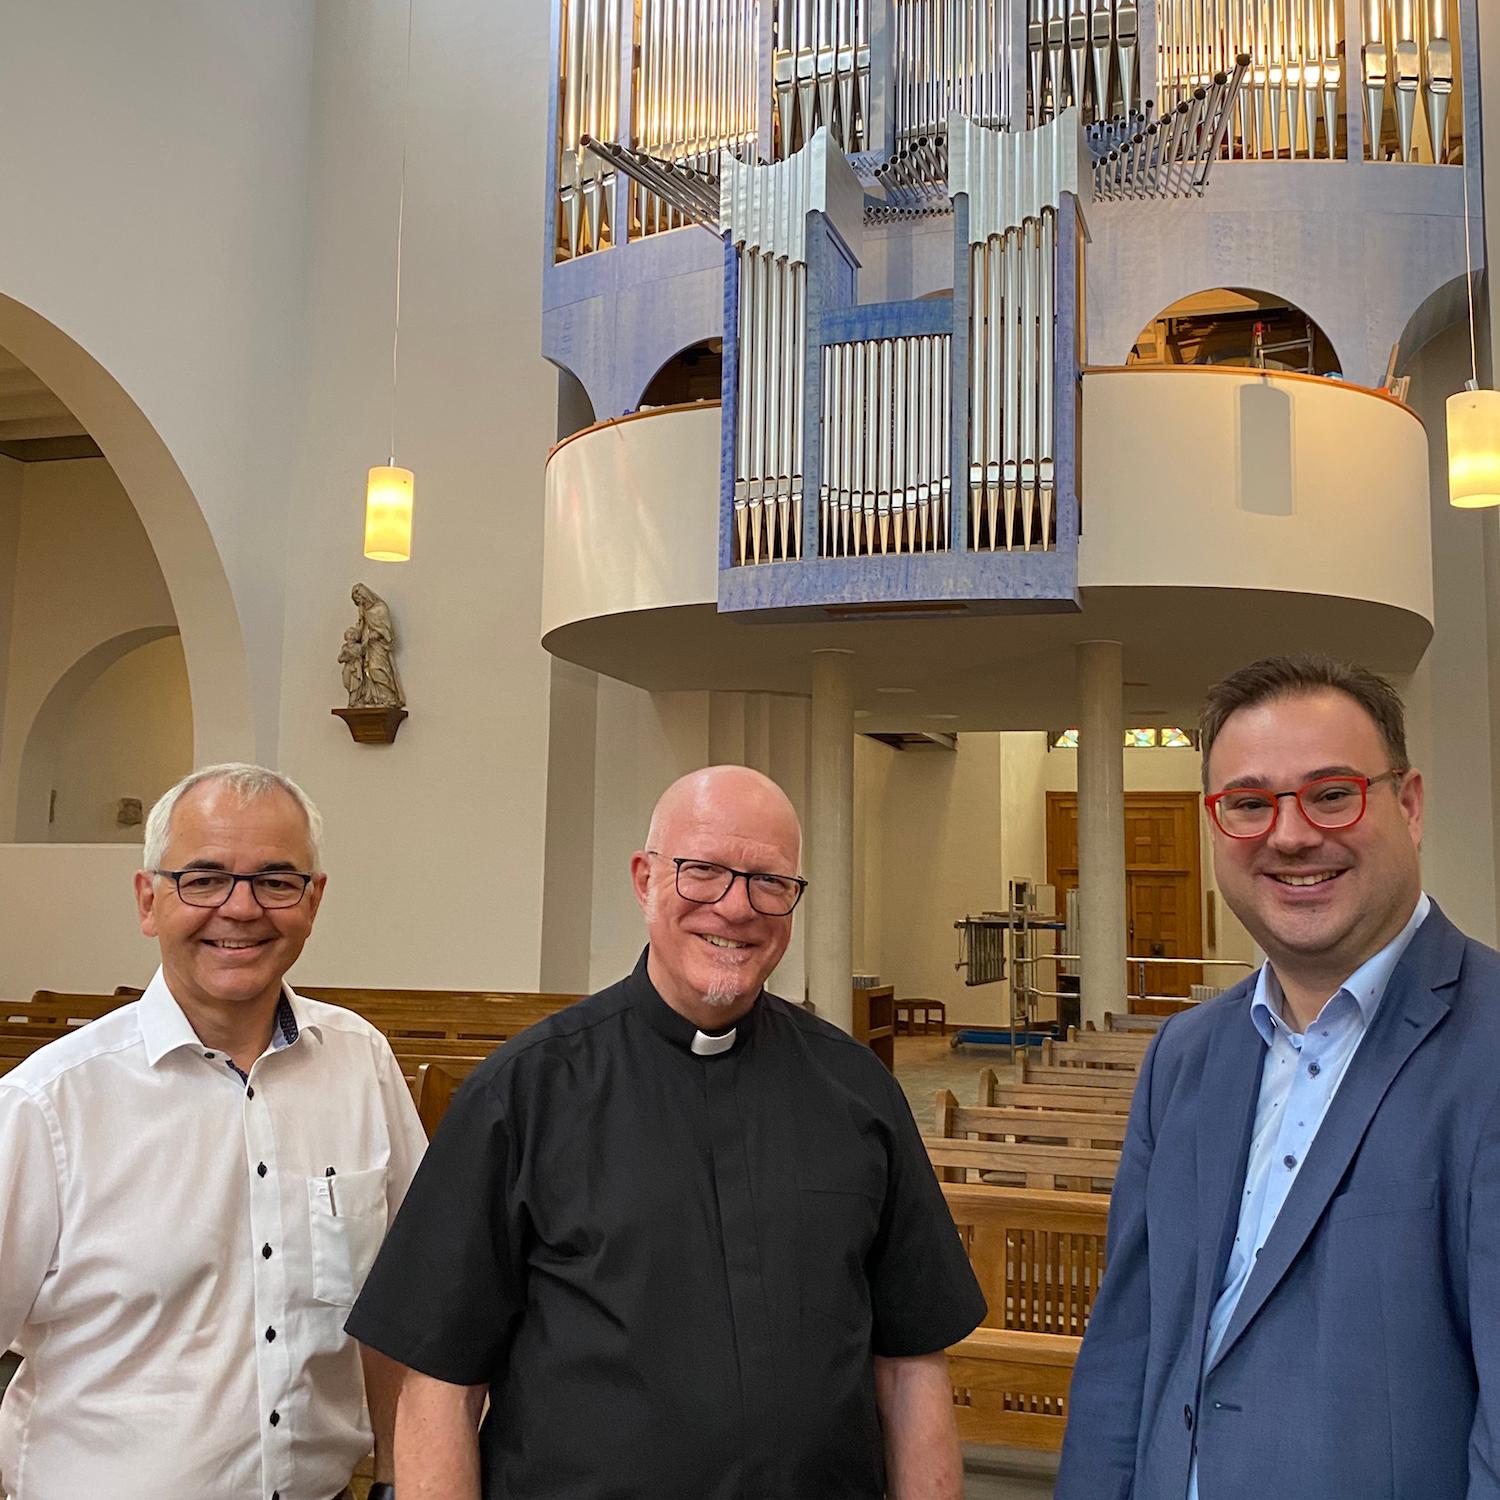 Josef Viethen vom Orgelbauverein, Pfarrer Werner Rombach und Kantor Emanuel Knauer (v.l.) freuen sich darauf, die neue Scholz-Orgel in Erkelenz zum ersten Mal in voller Schönheit zu hören.